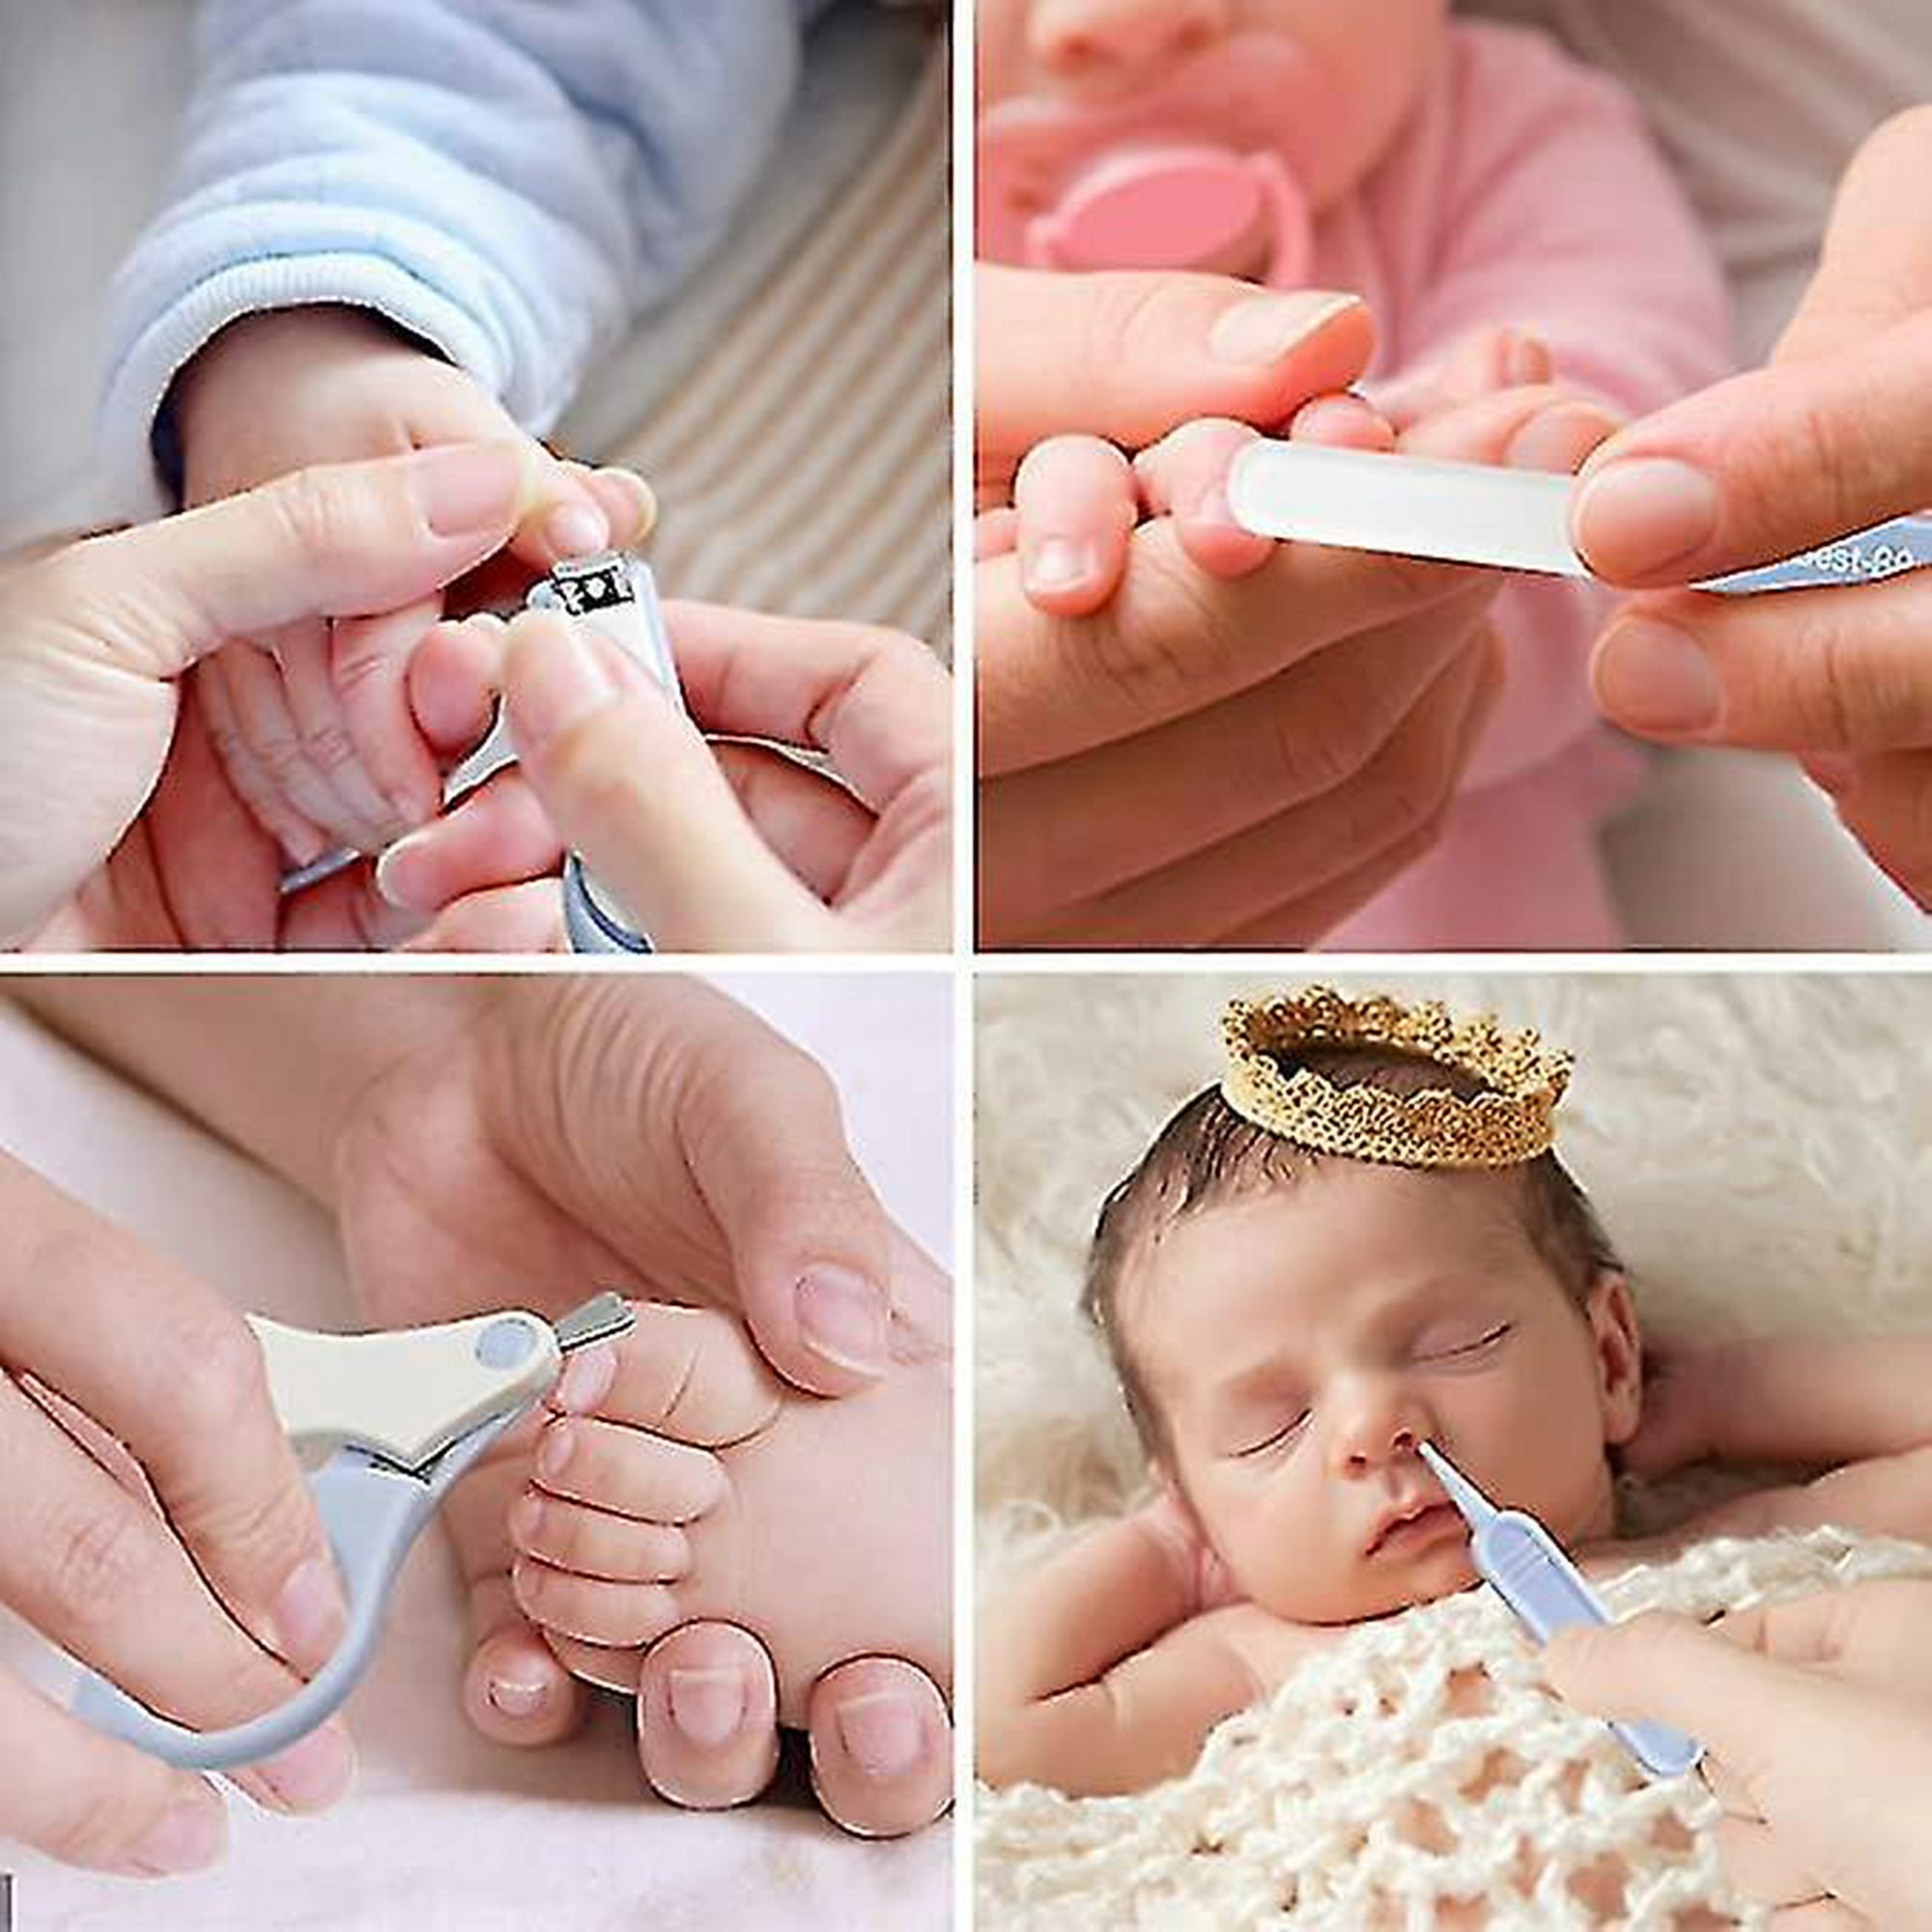 Kit de uñas para bebé, juego de cuidado de uñas de bebé 4 en 1 con bonito  estuche, cortaúñas para bebés, tijeras, lima de uñas y pinzas, kit de